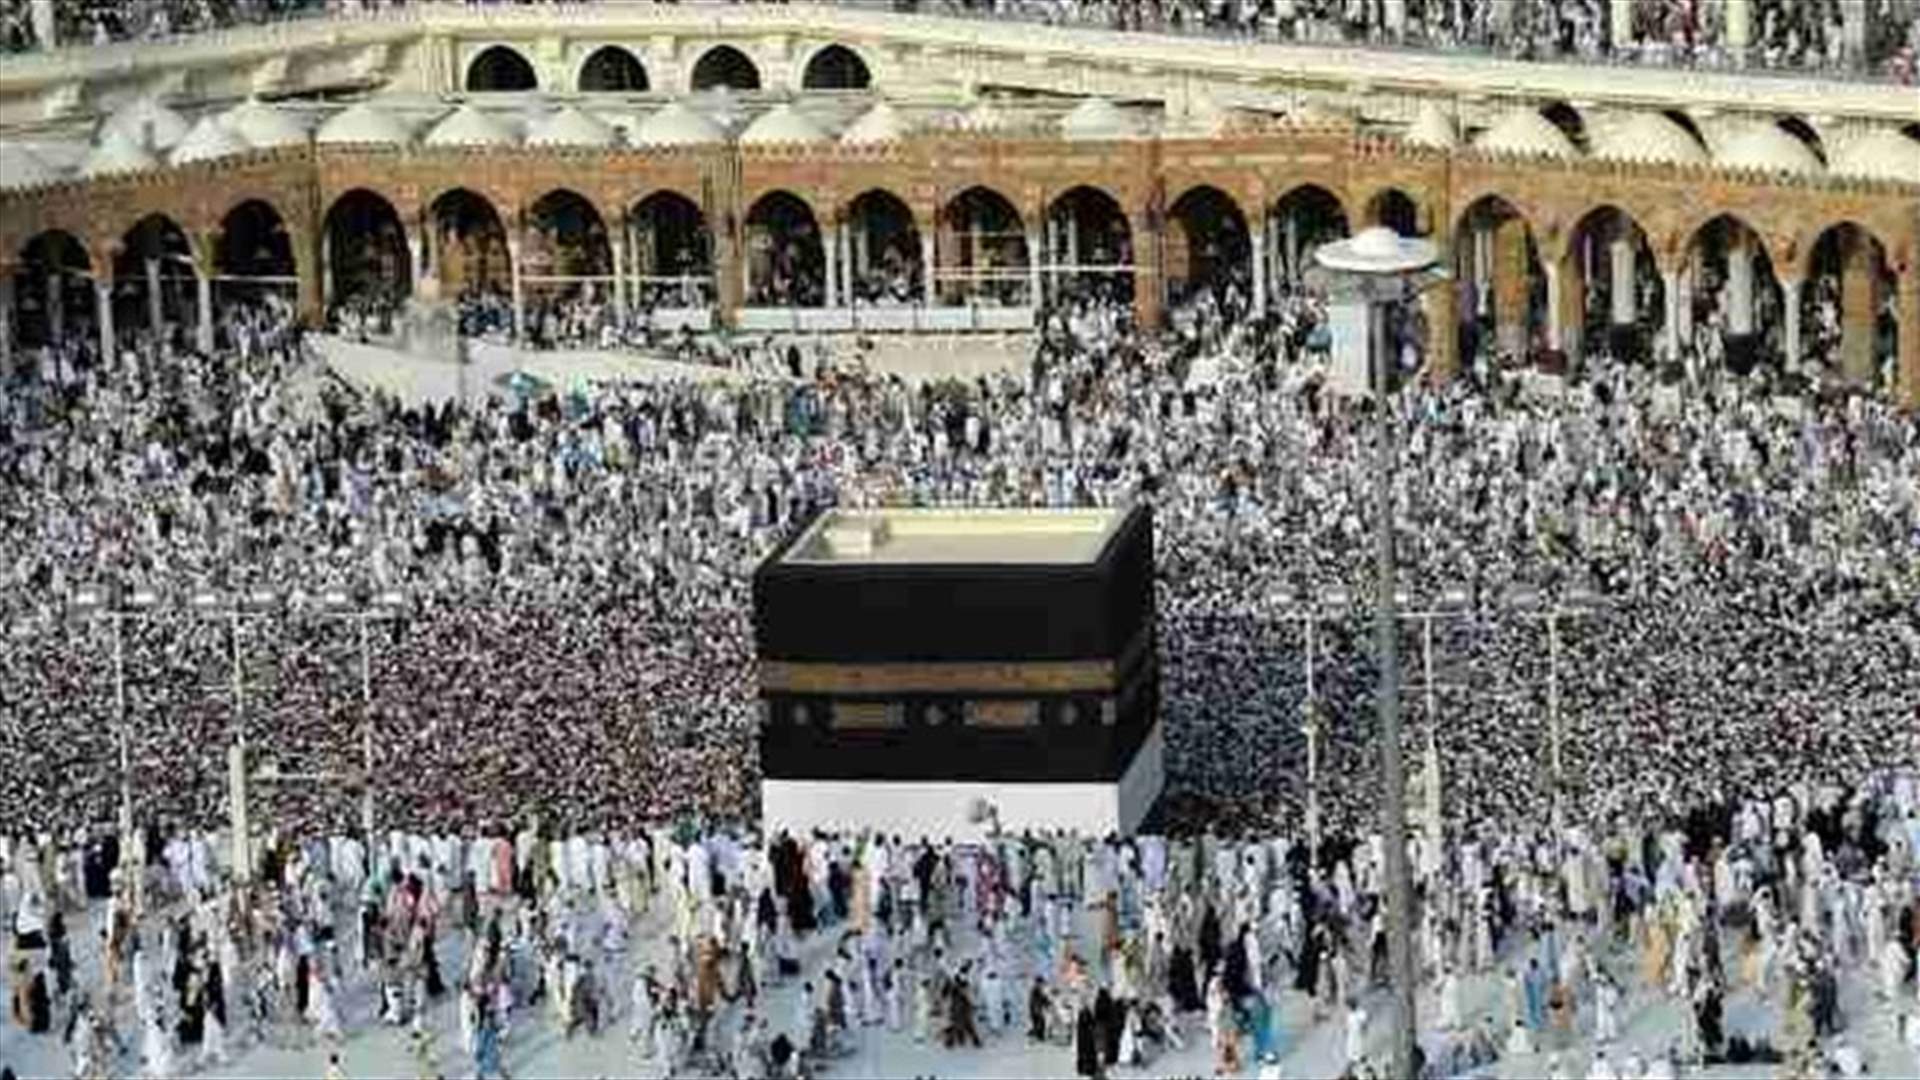 Syrians on haj pray for peace; Damascus says Riyadh plays politics